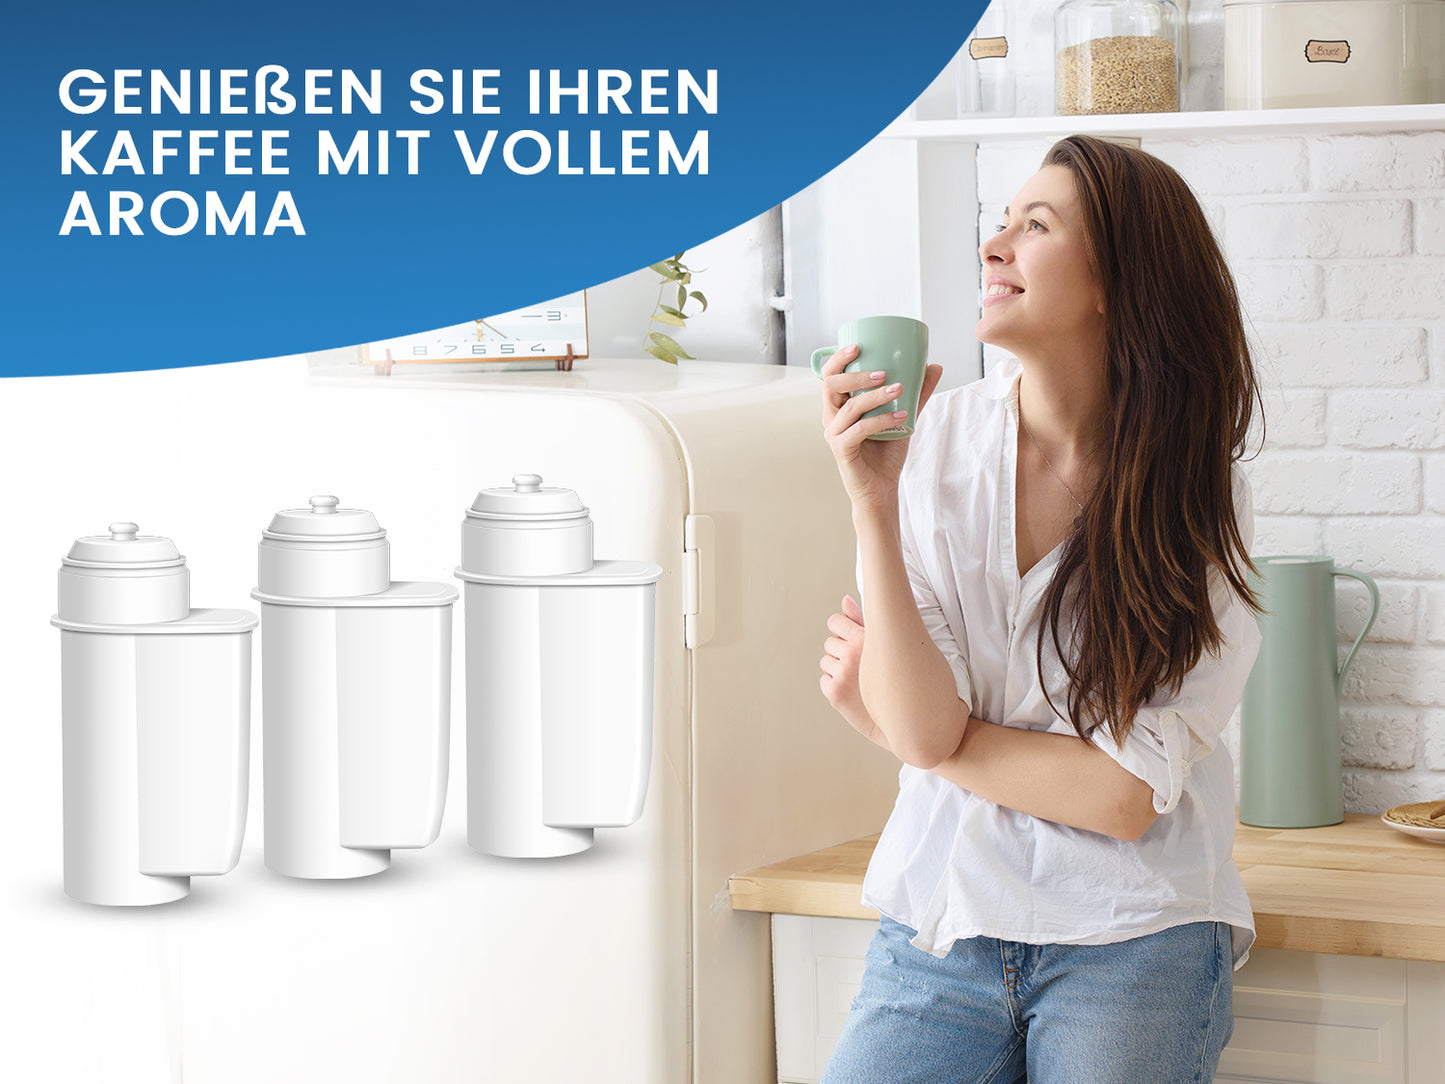 Coffee+ Wasserfilter für Kaffeemaschinen komp. mit Brita Intenza System - Pack 12